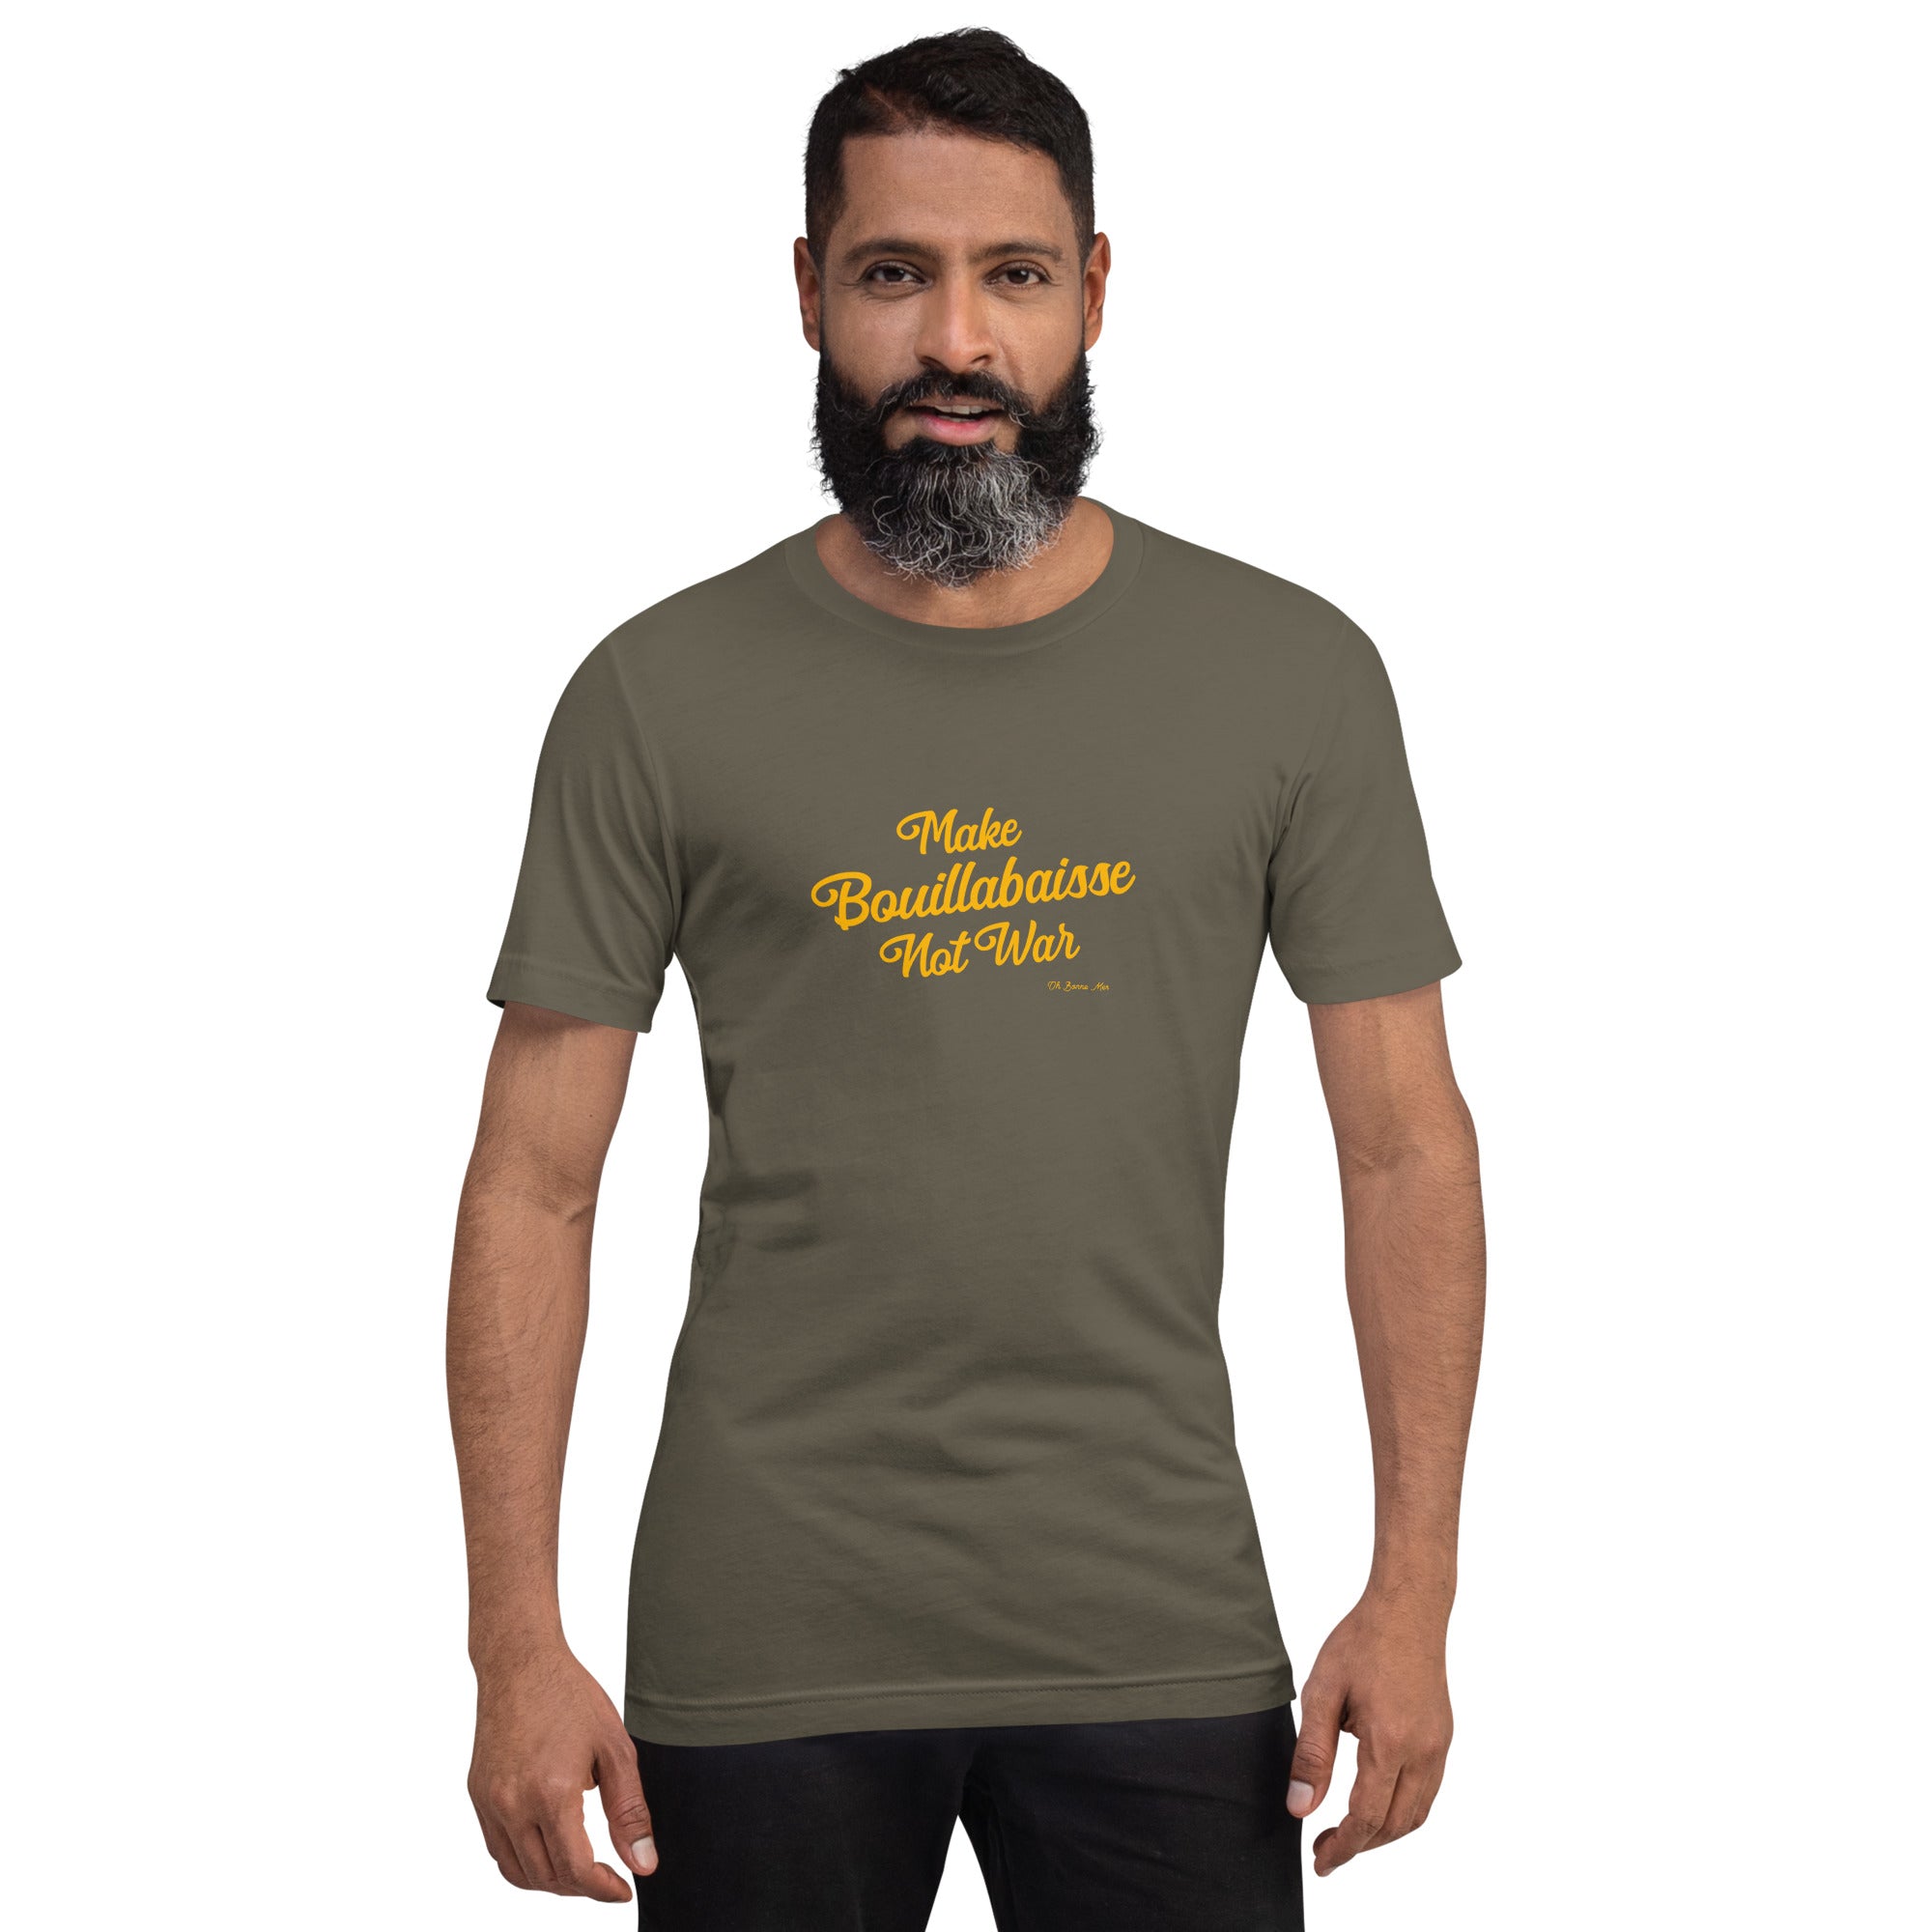 Unisex t-shirt Make Bouillabaisse Not War Text Only on greens